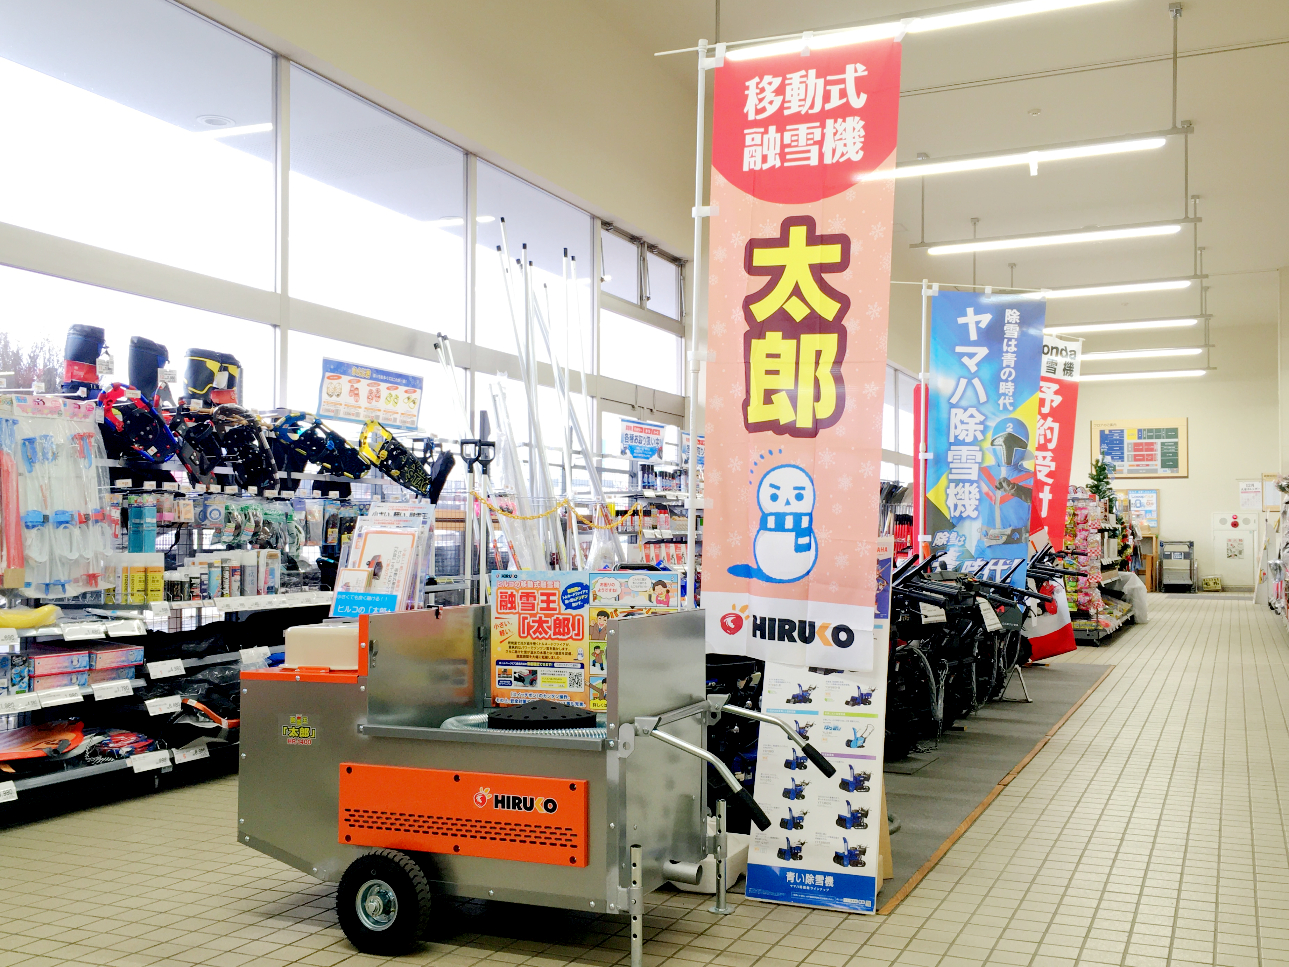 年度 移動式融雪機 太郎 展示店舗 追加しました 融雪総合メーカー 株式会社ヒルコ